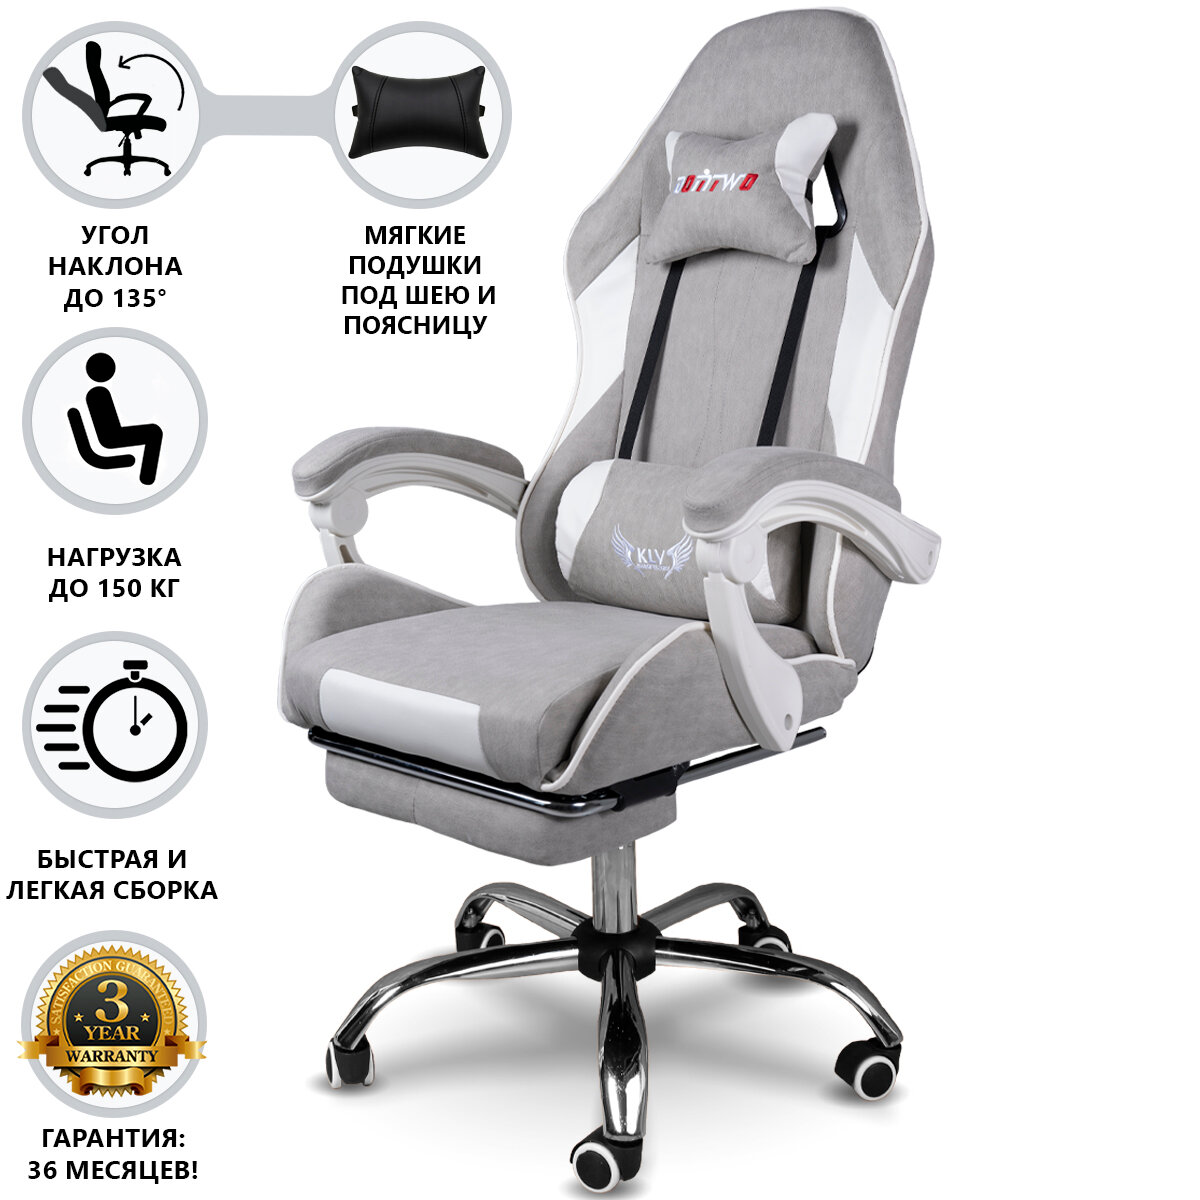 Компьютерное игровое кресло с подставкой для ног, цвет серый